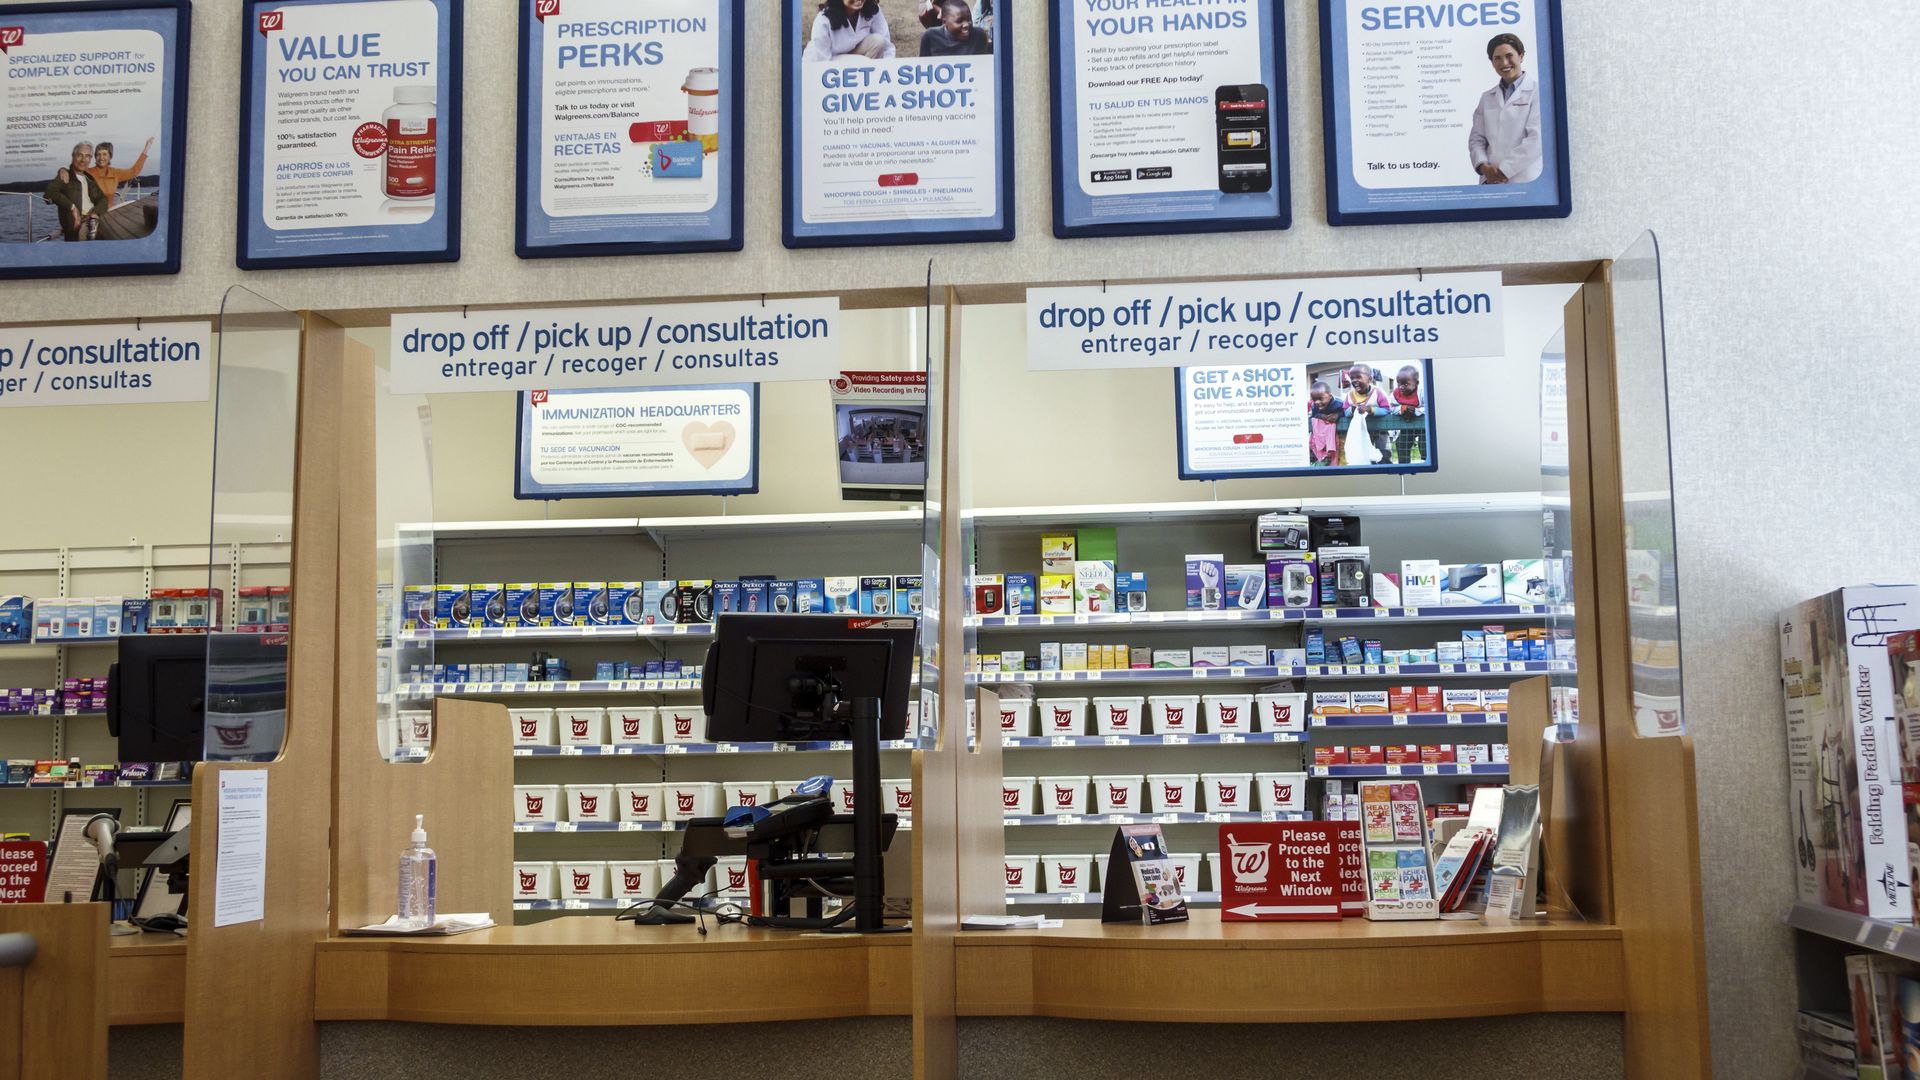 Pharmacy counter at Walgreens